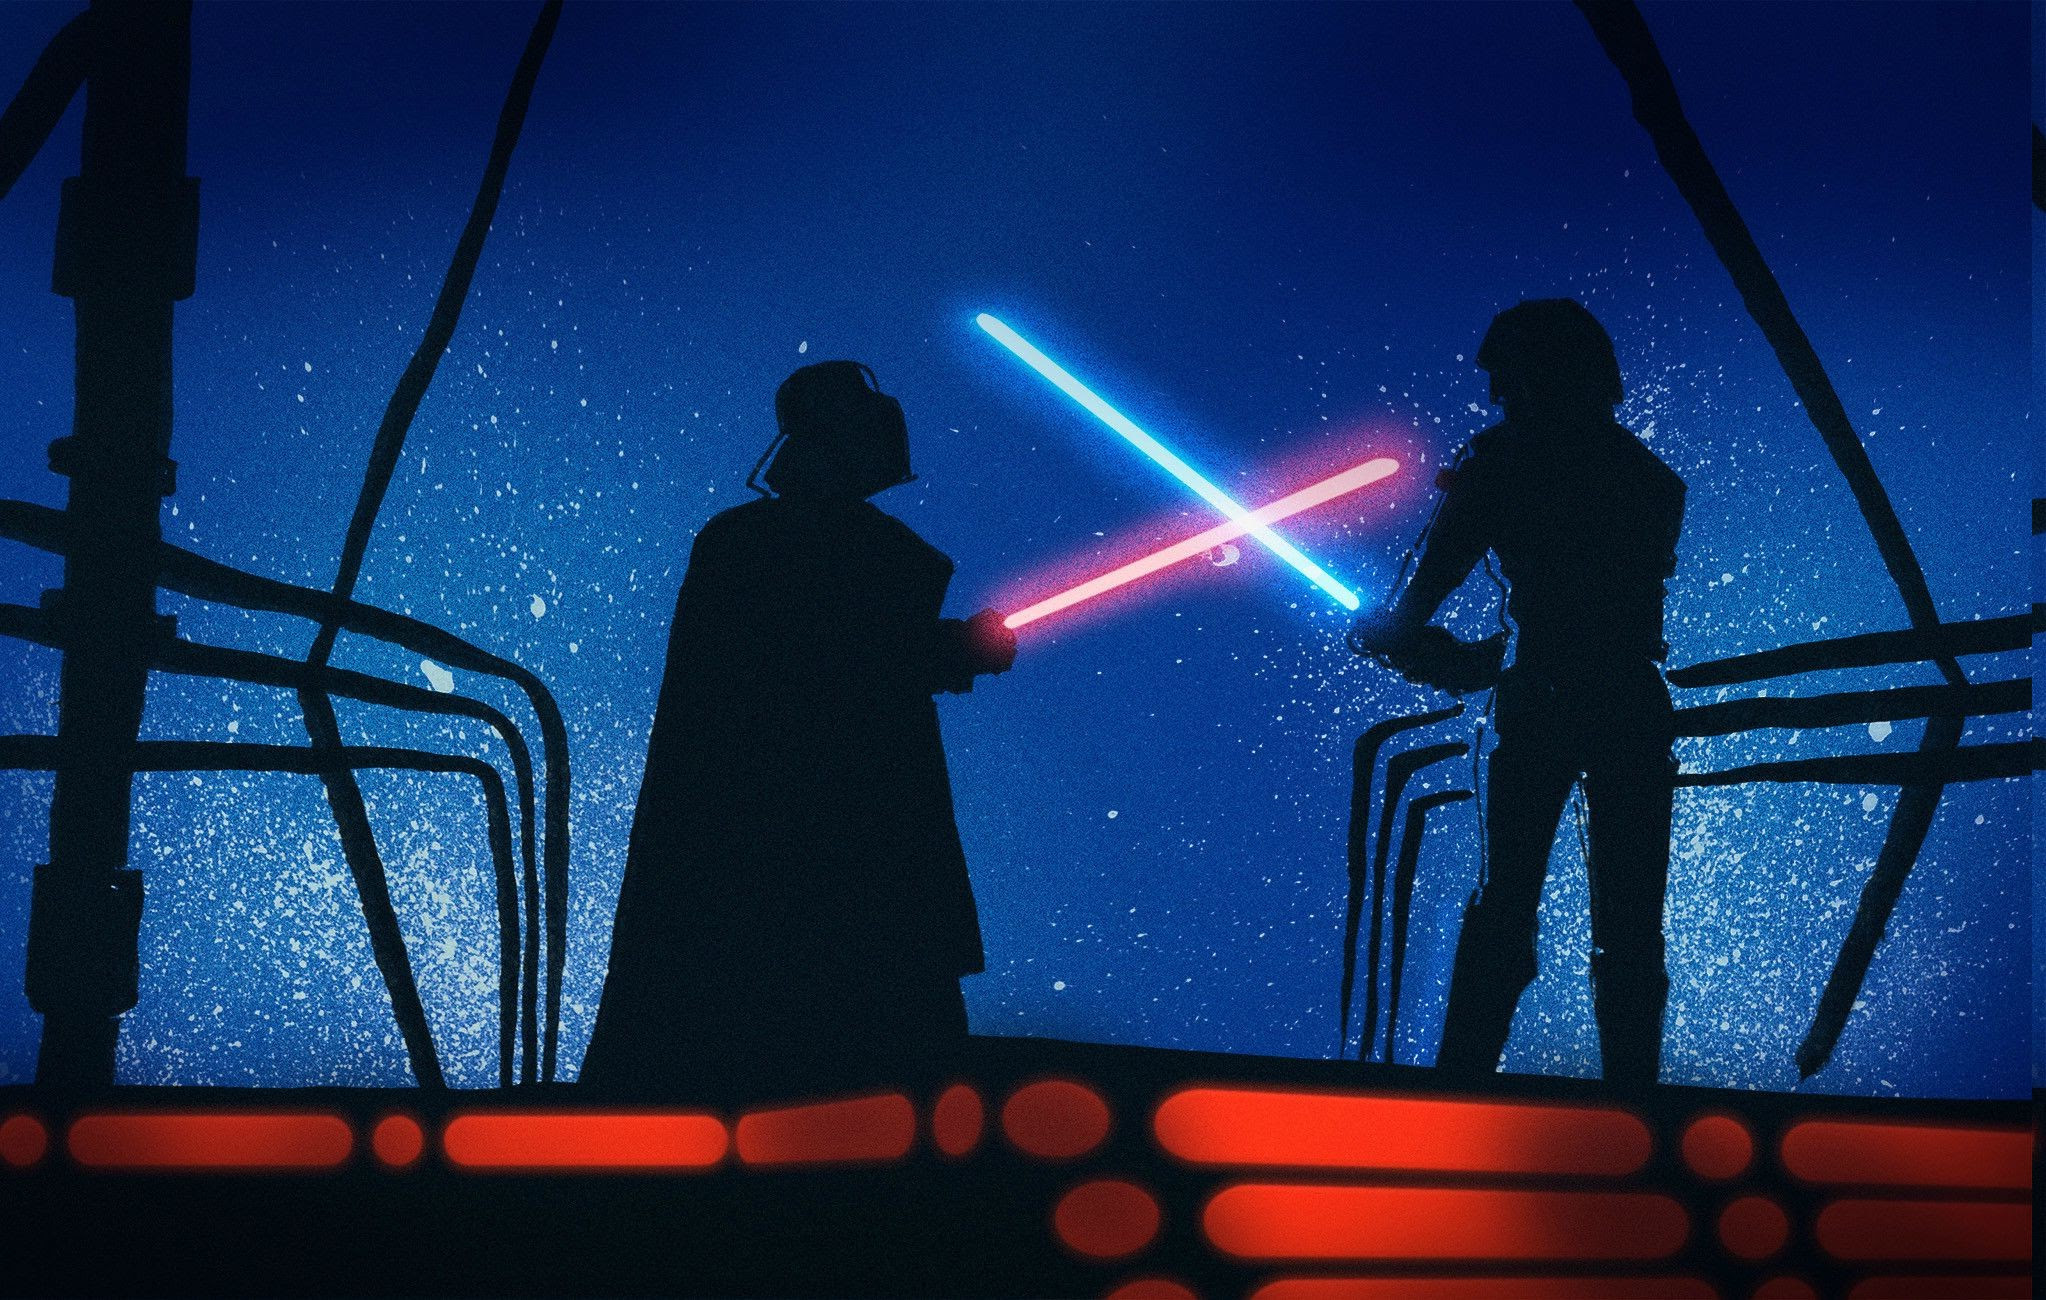 Star Wars Luke Skywalker Darth Vader Anakin Skywalker Wallpapers Hd Desktop And Mobile Backgrounds